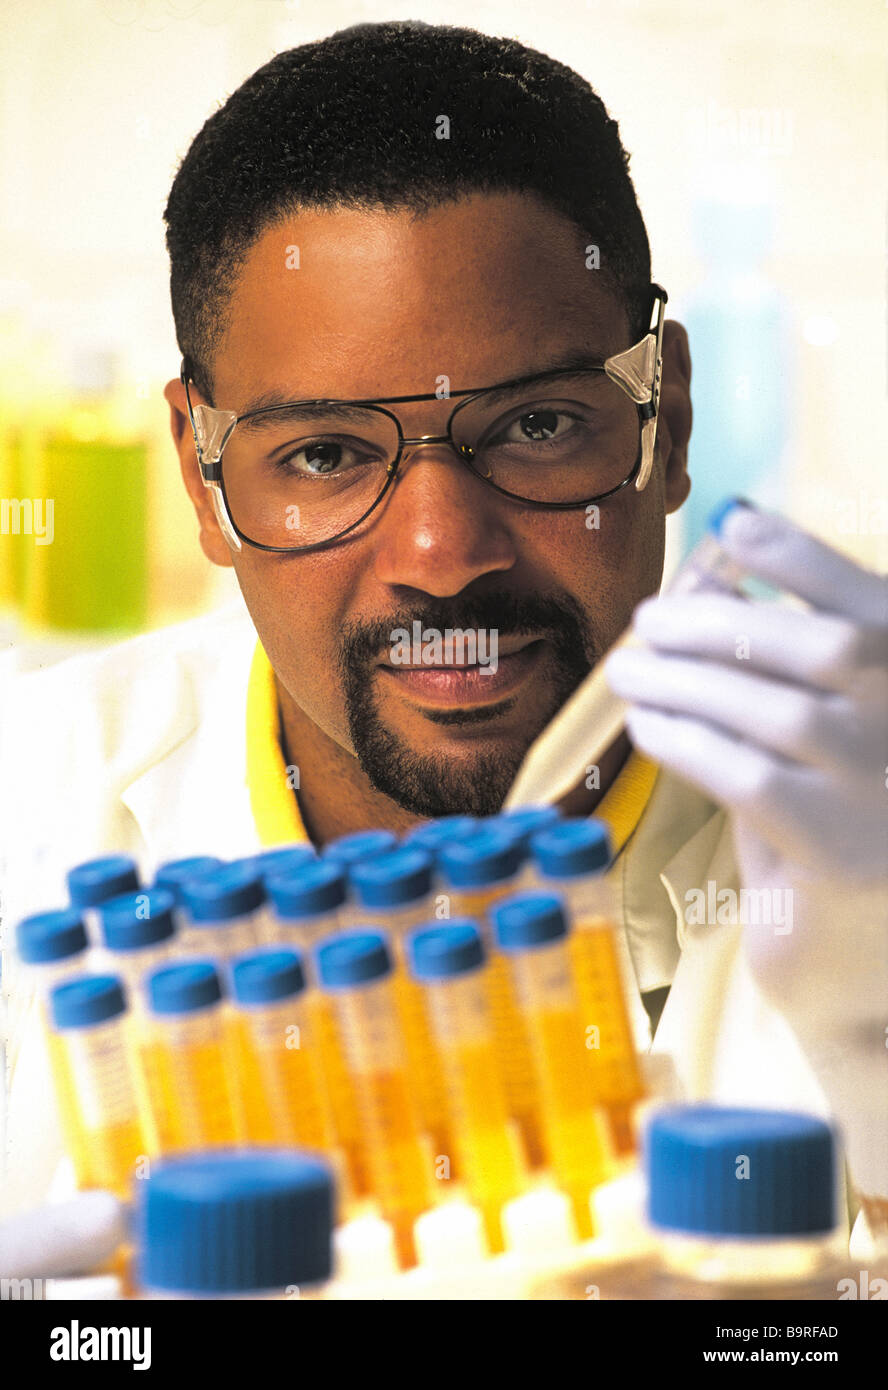 Maschio americano africano tecnico di laboratorio nel laboratorio di ricerca, tenendo le provette per la prova,indossando labcoat bianco e occhiali di sicurezza. Foto Stock